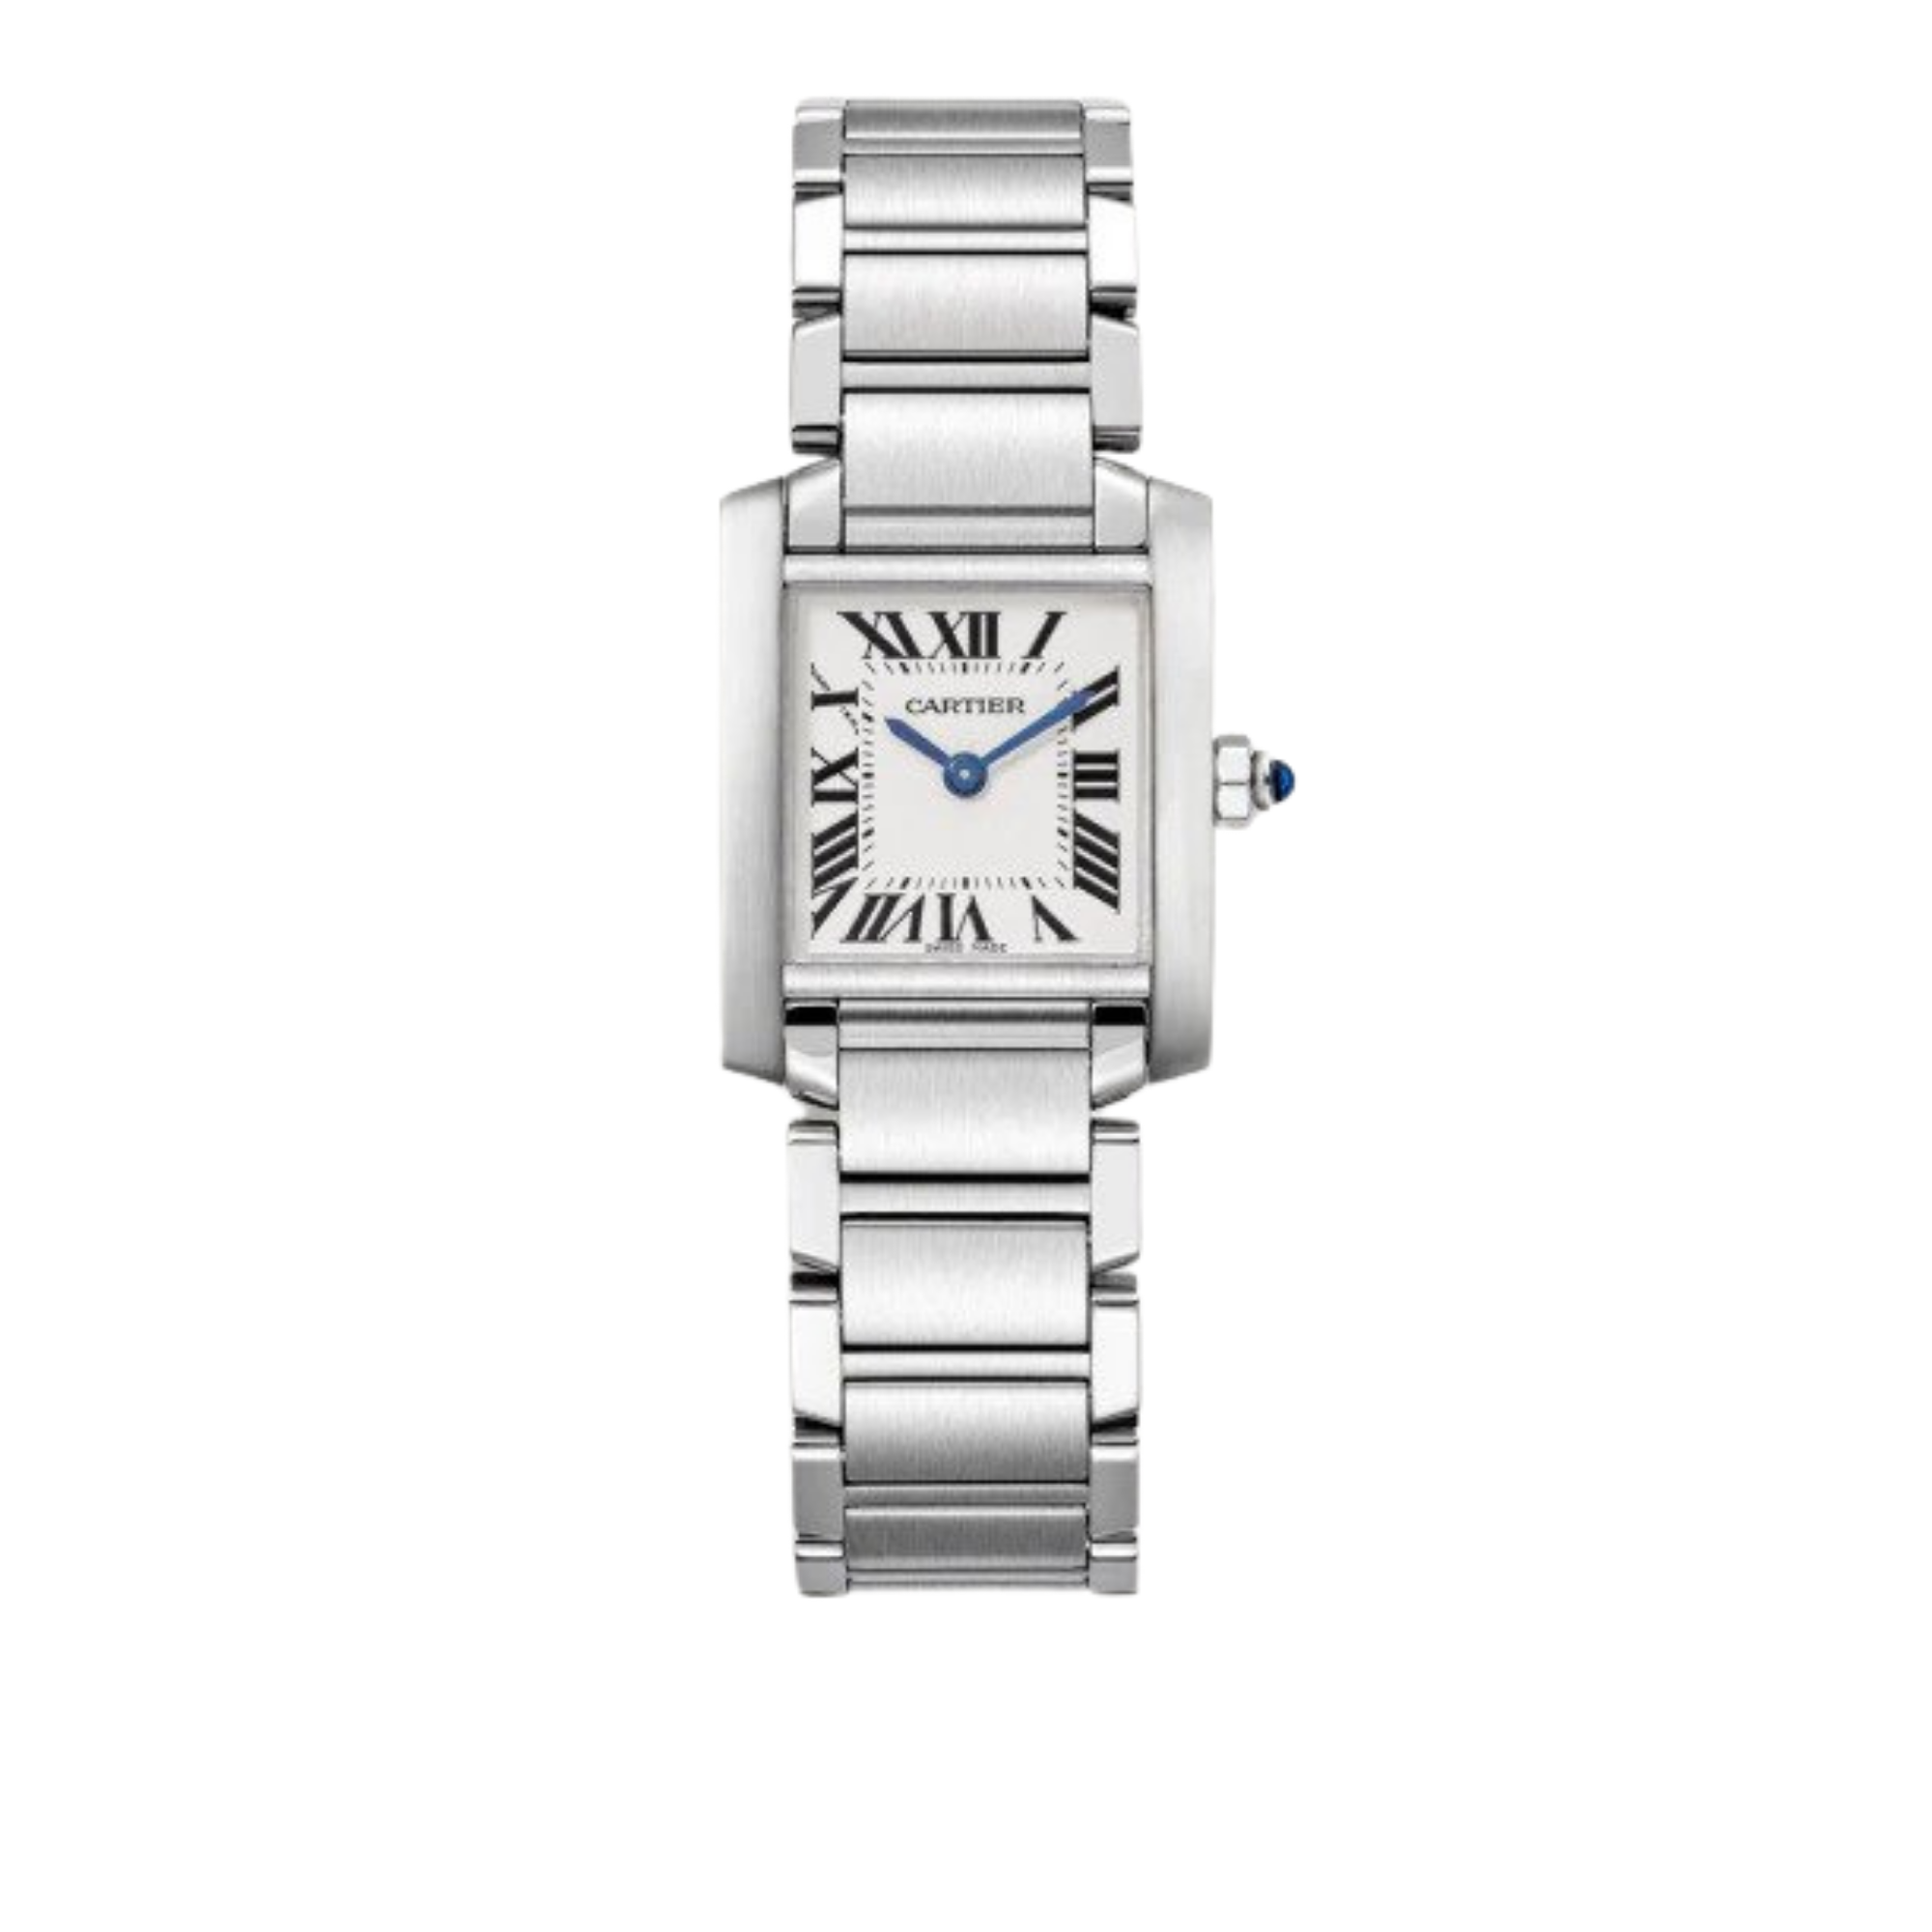 Cartier “Tank Française” steel watch, $3,550 at Cartier